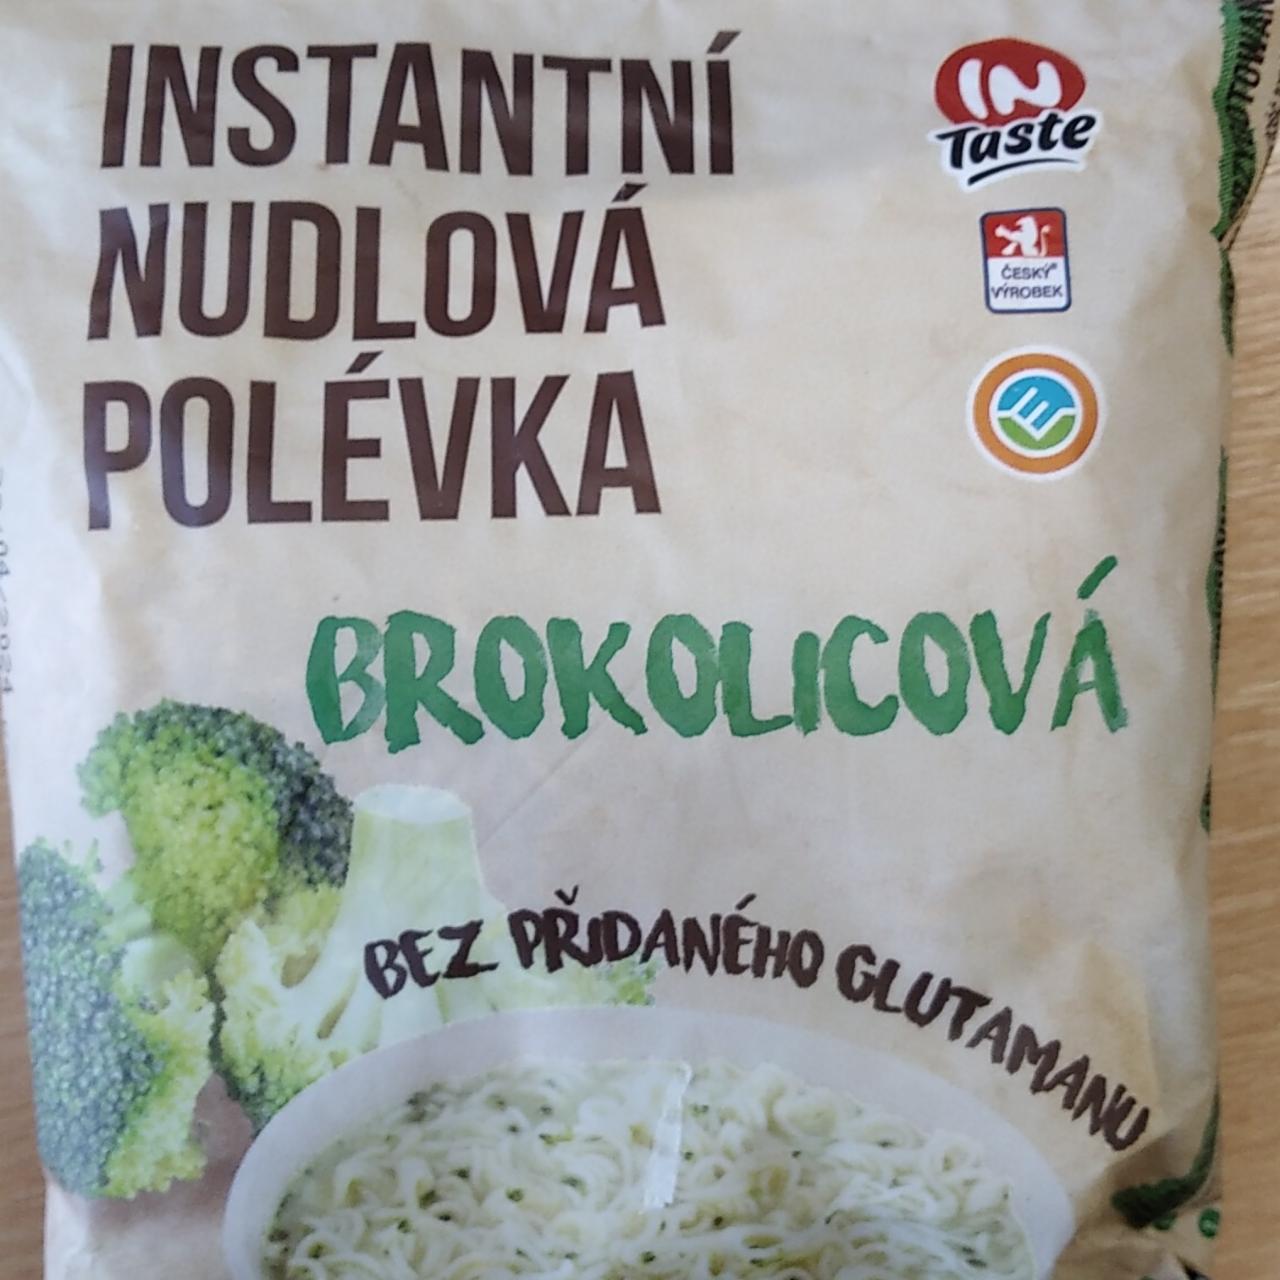 Fotografie - instantní nudlová polévka brokolicová In Taste